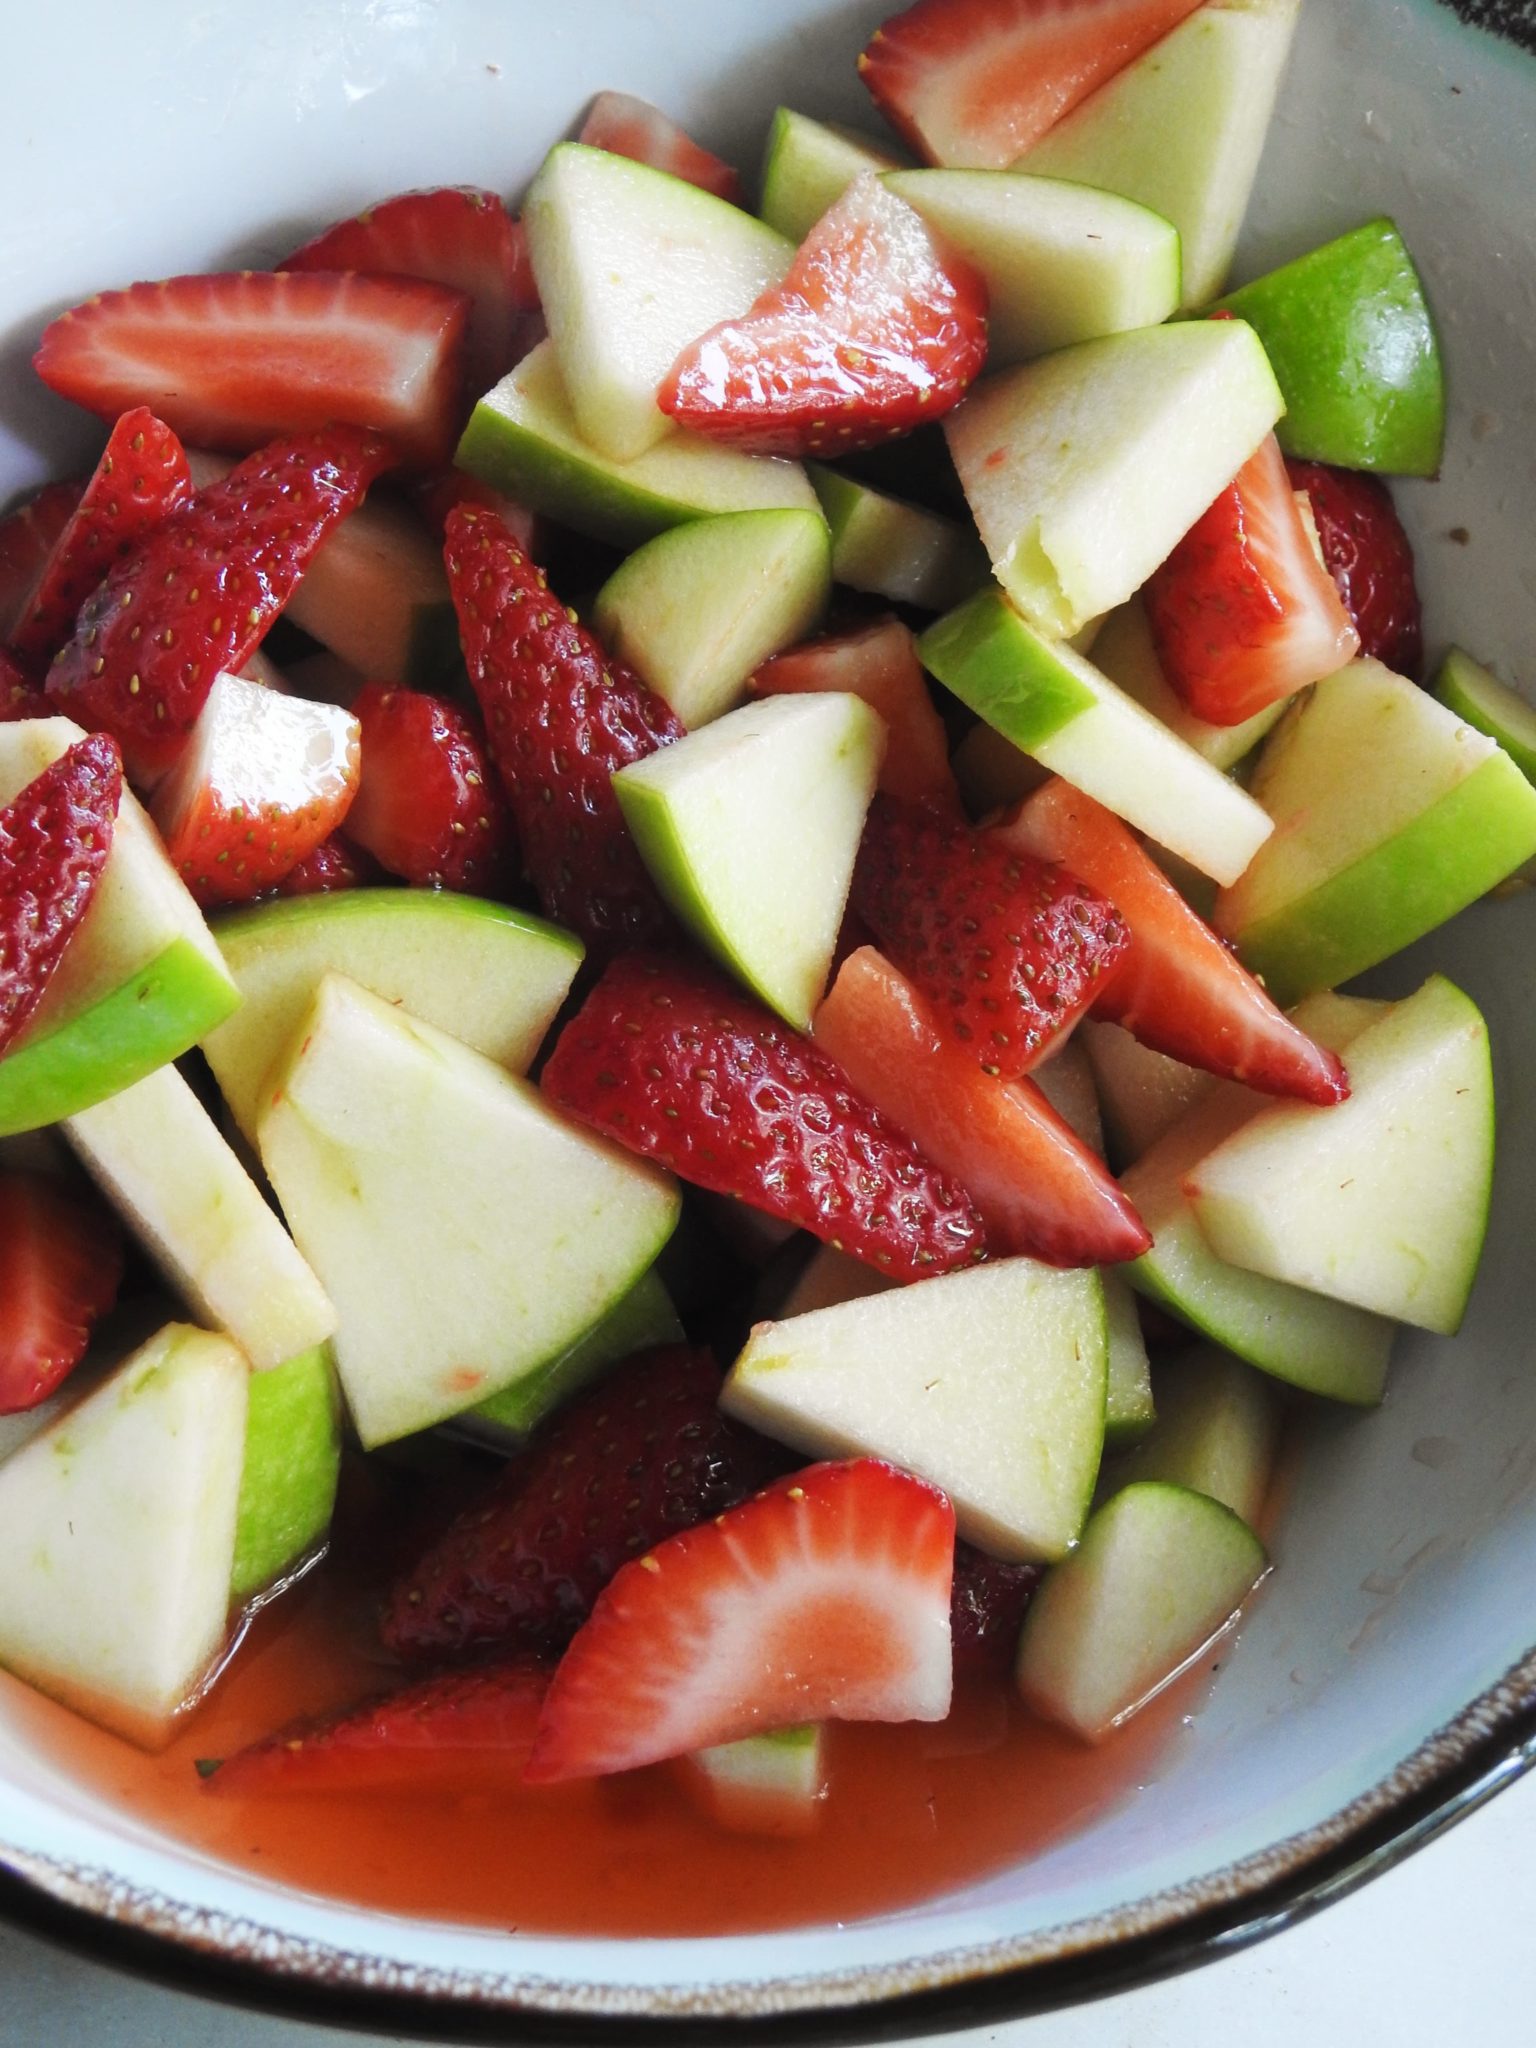 สลัดผลไม้ไทยสตรอว์เบอร์รี่และแอปเปิ้ลเขียว